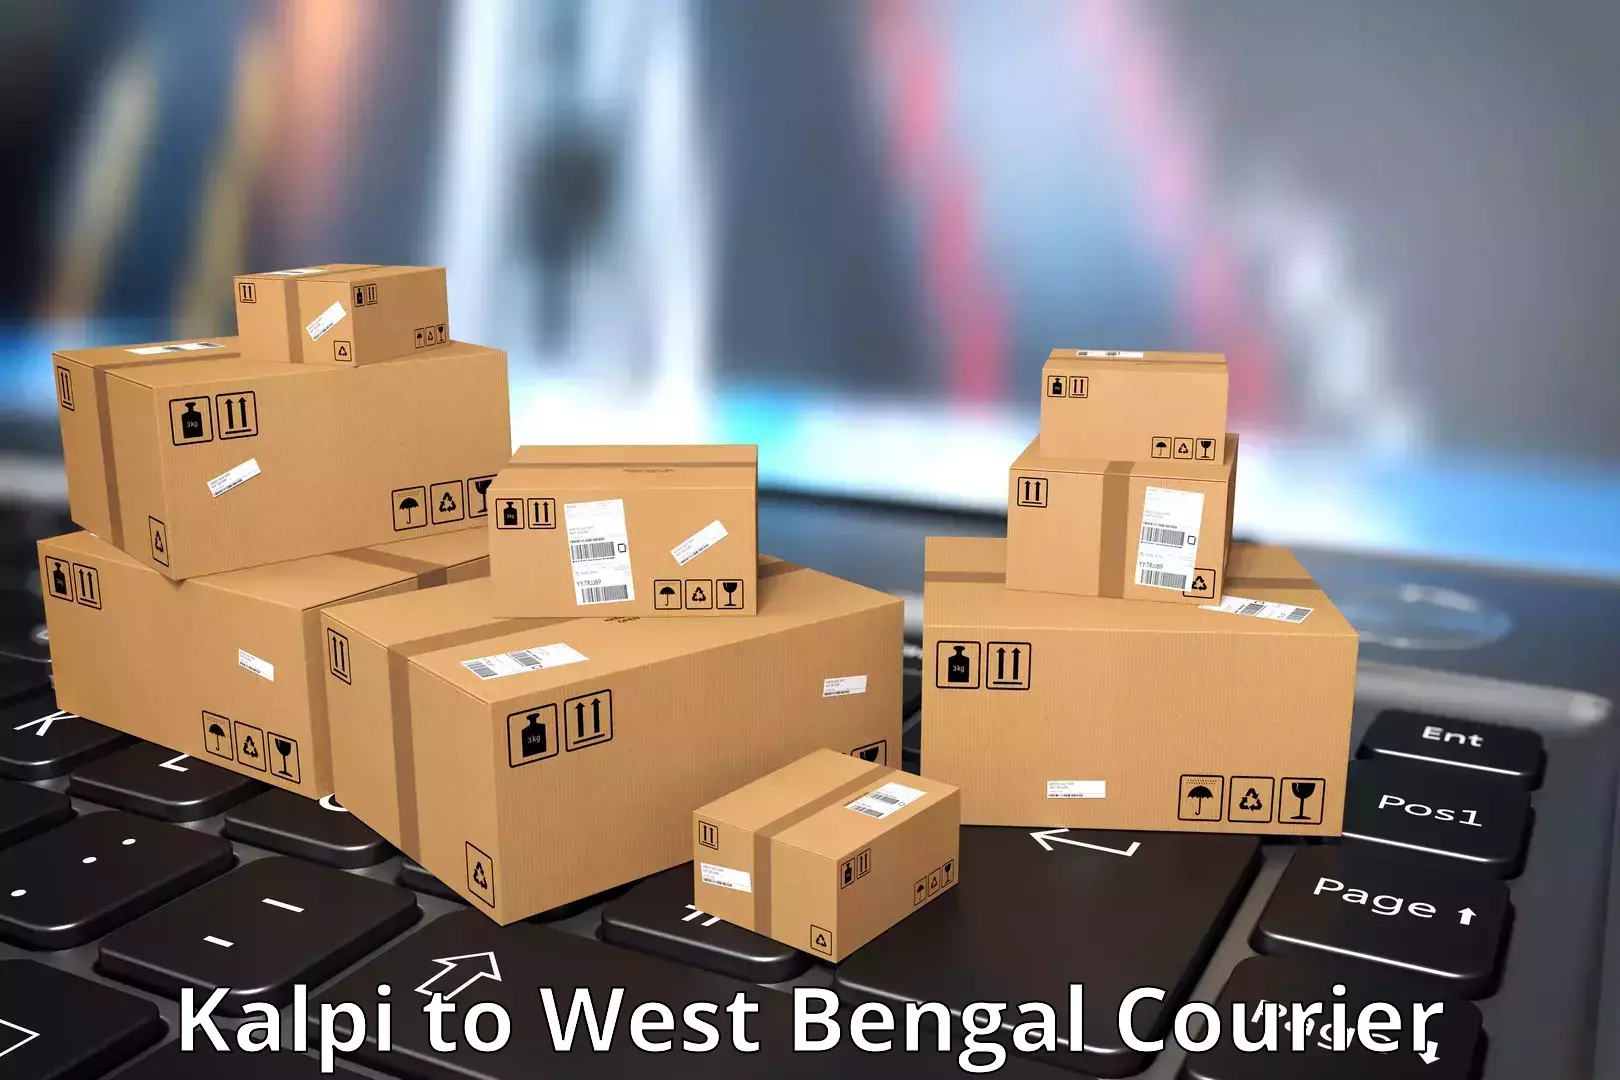 Doorstep delivery service Kalpi to West Bengal